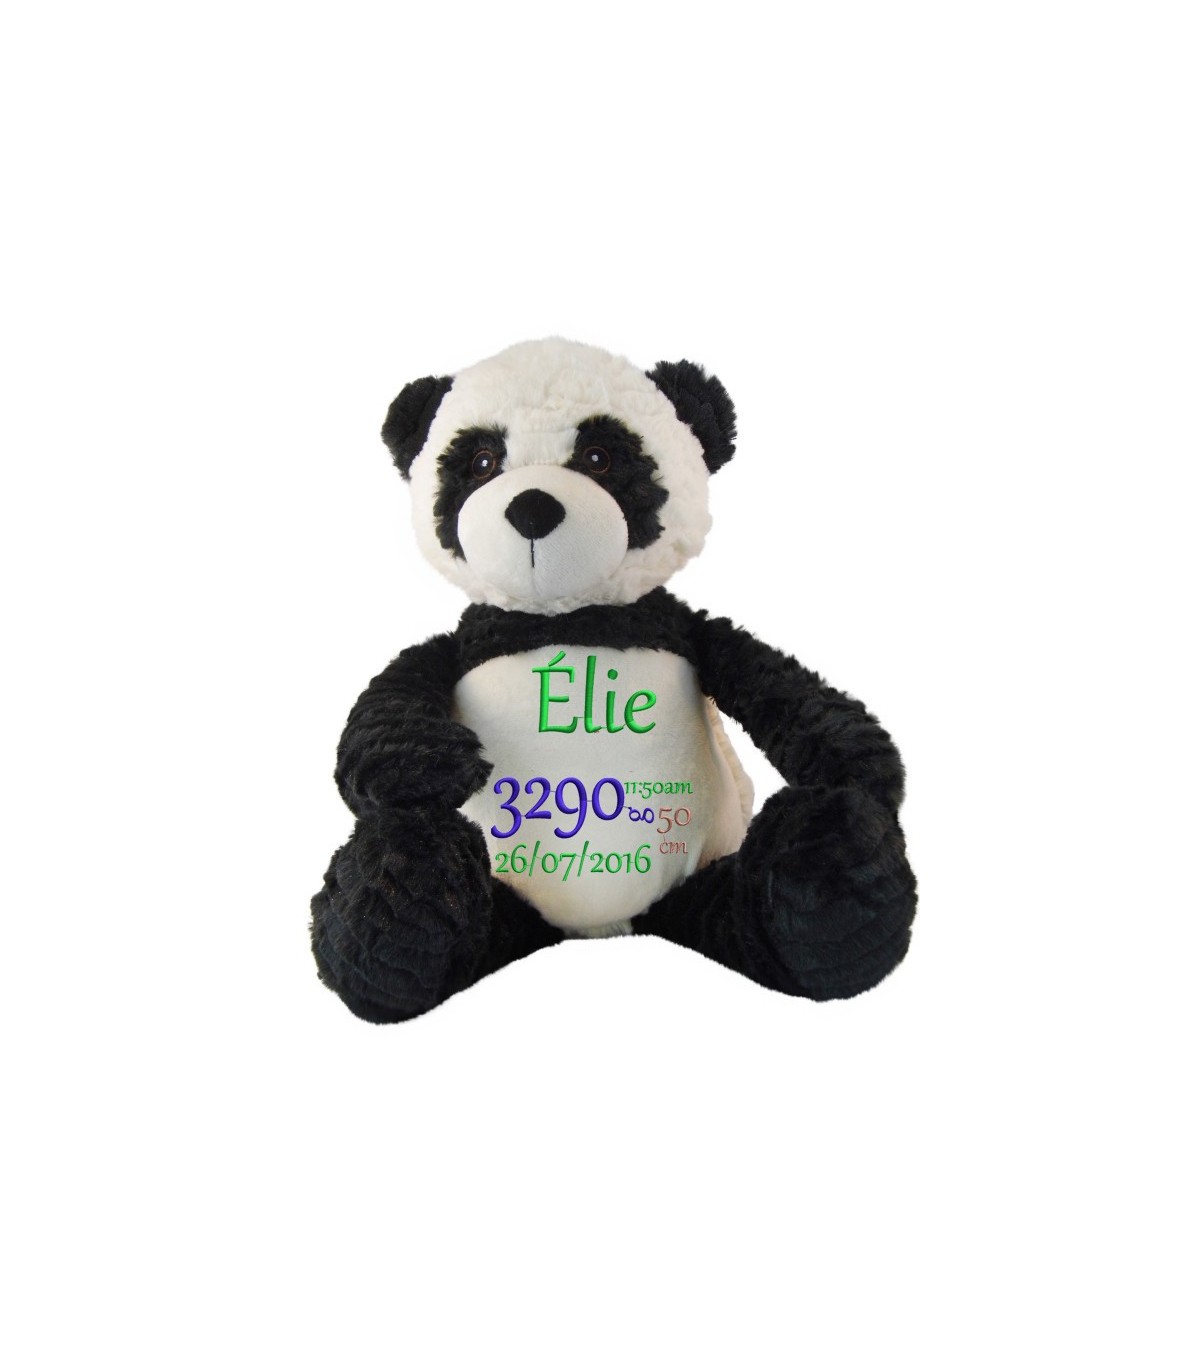 Un magnifique panda en peluche brodé et personnalisé avec pr